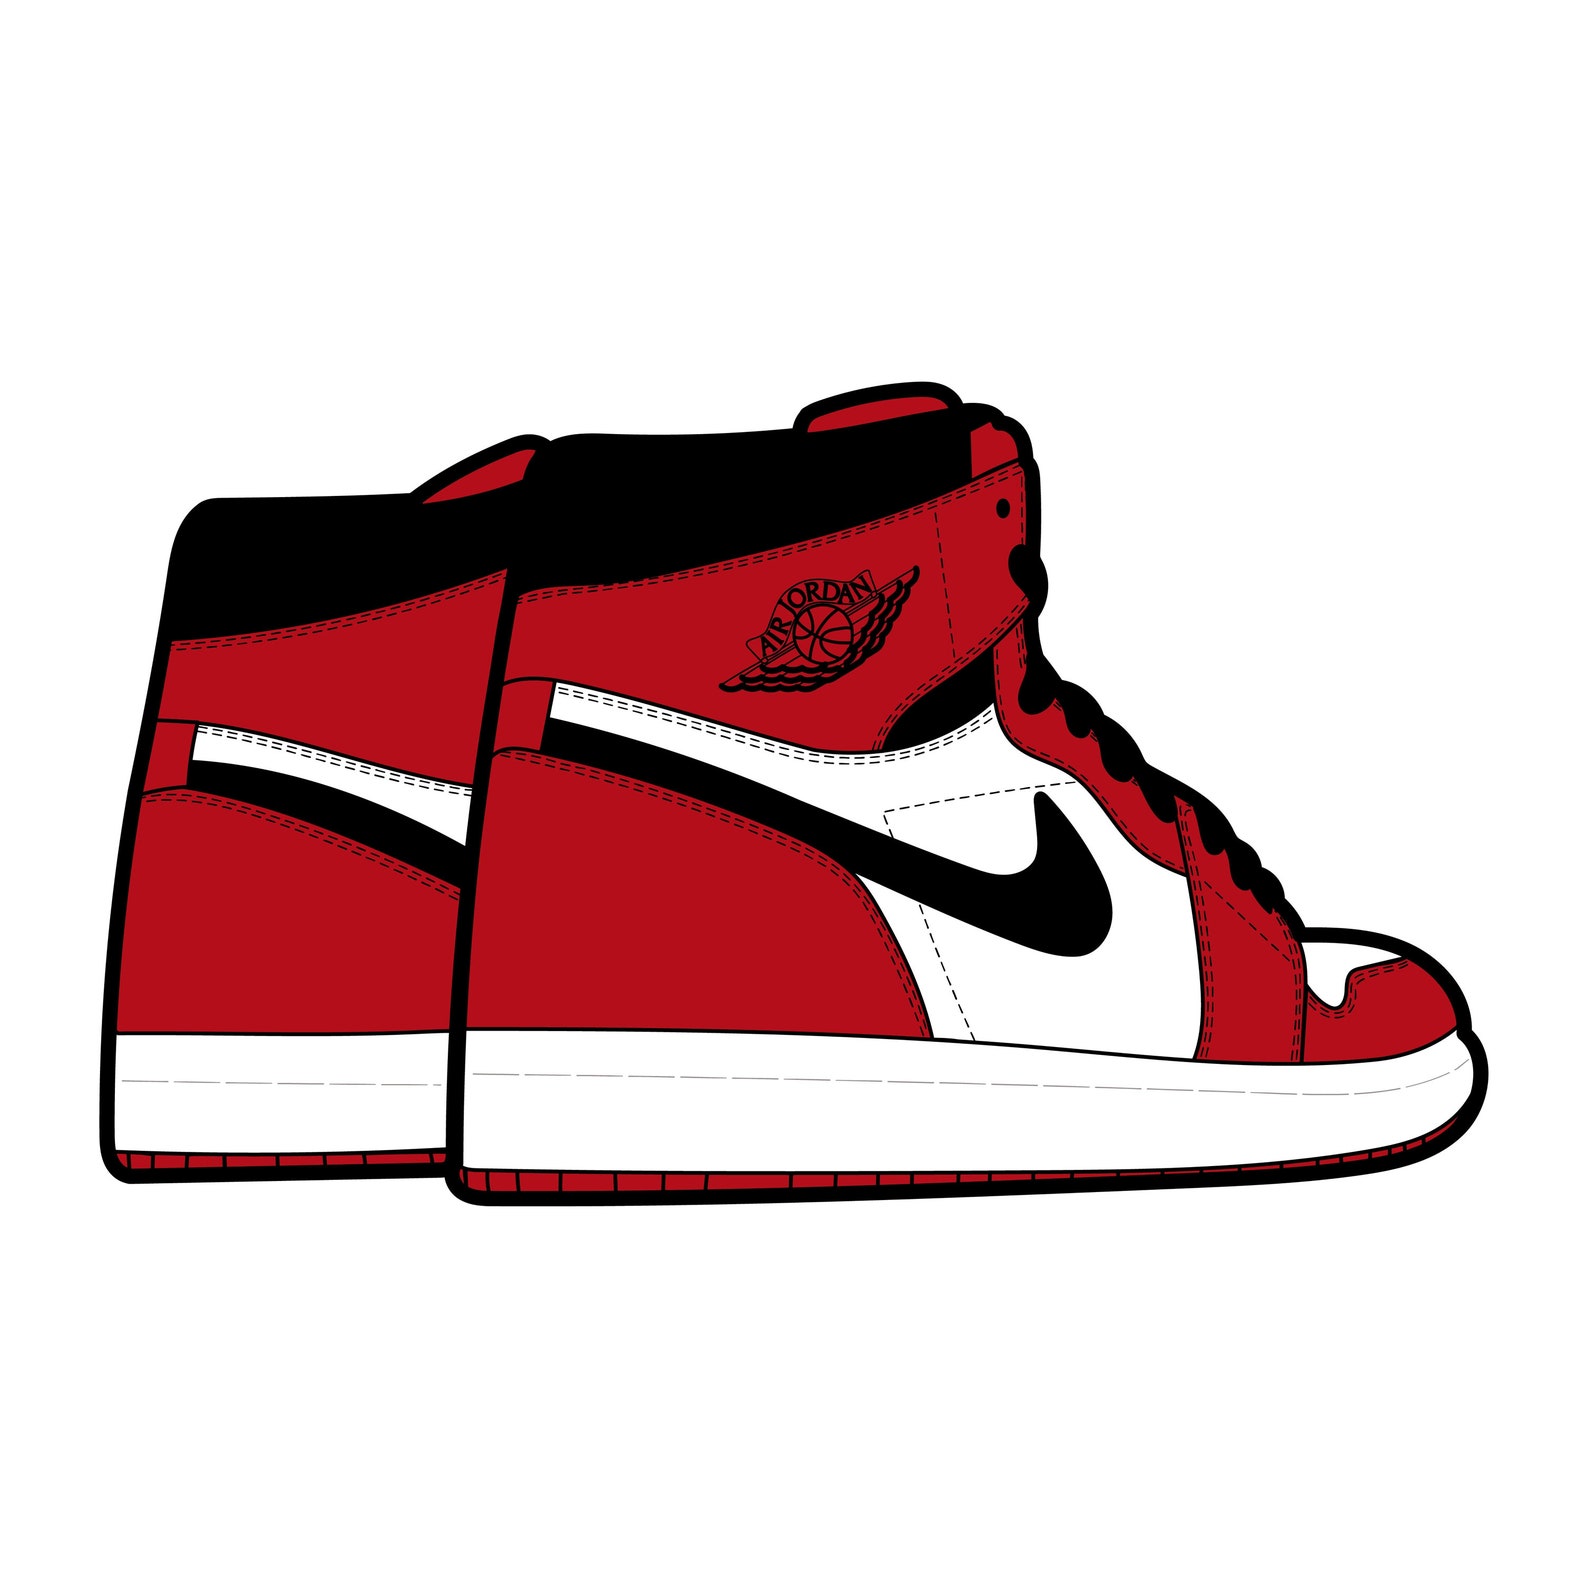 Air Jordan 1 Chicago Red/white Sneaker SVG PNG & JPG File - Etsy